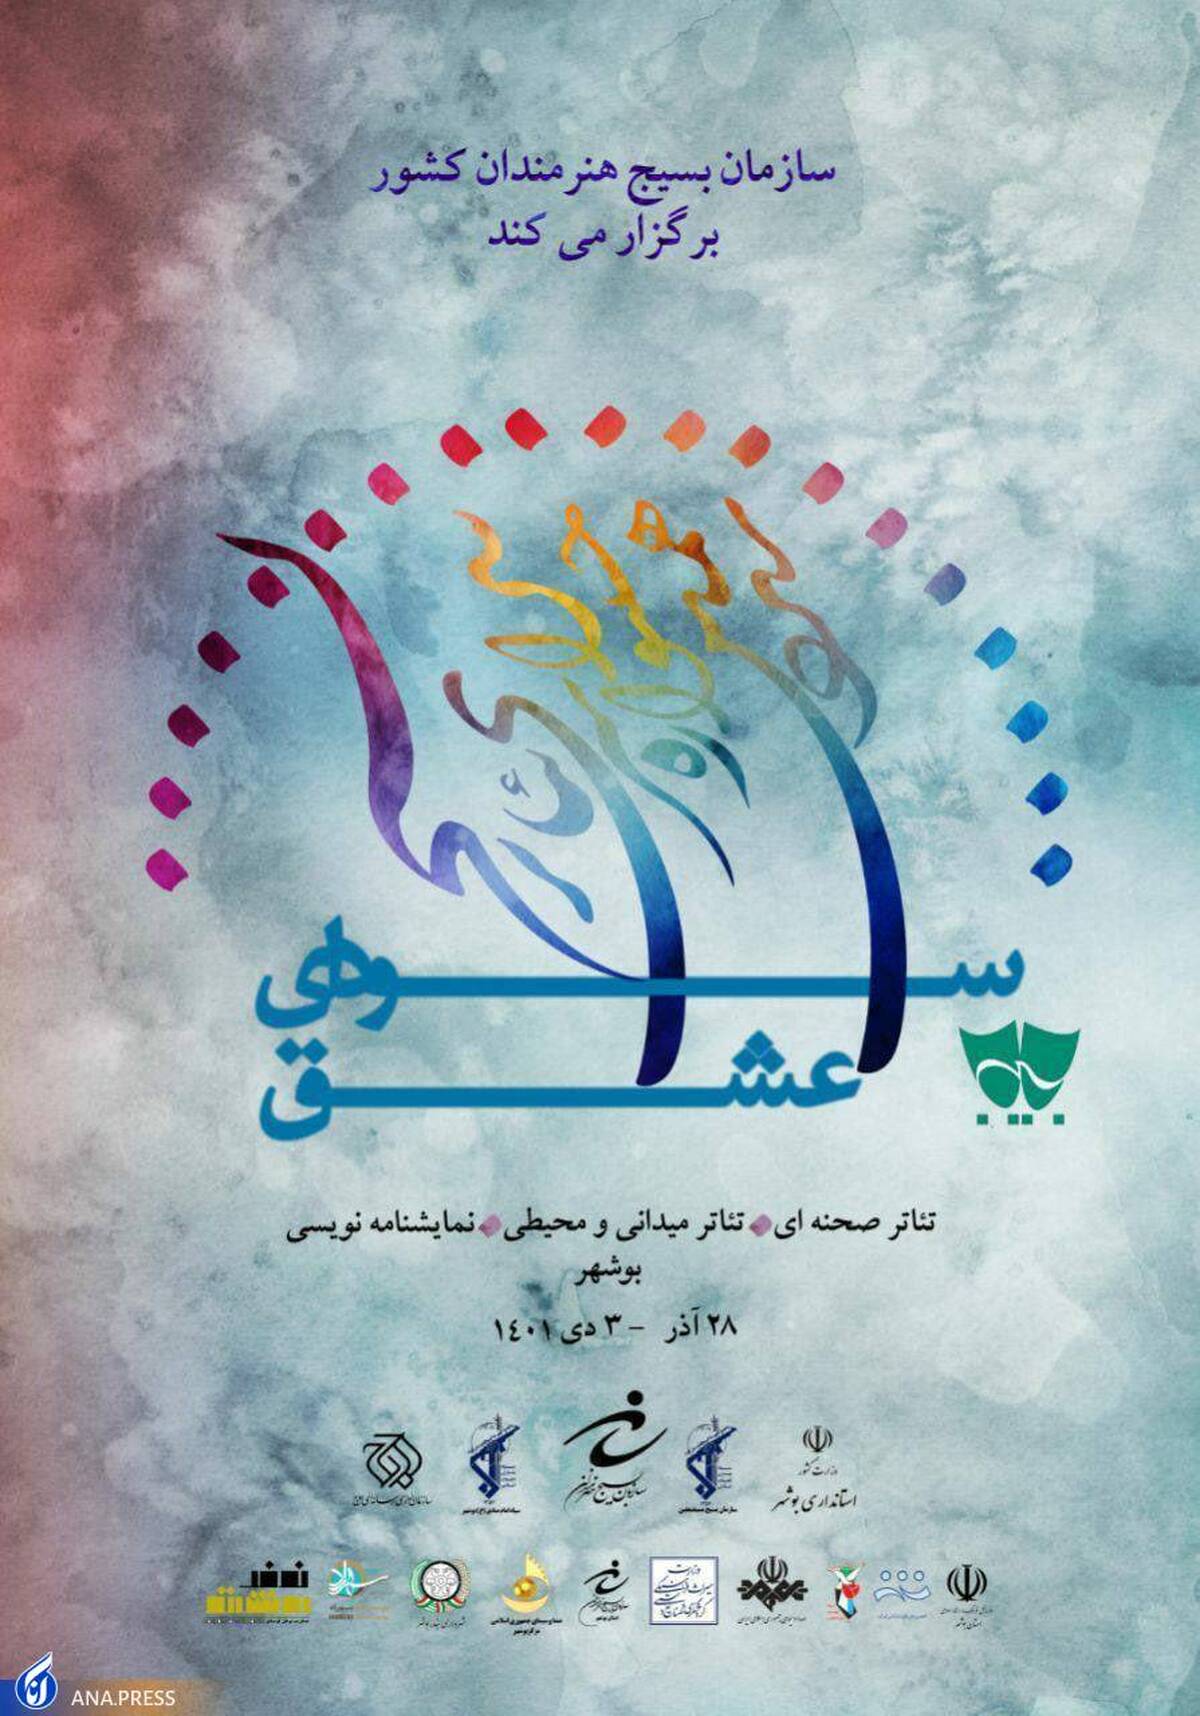 بوشهر، میزبان جشنواره تئاتر بسیج شد